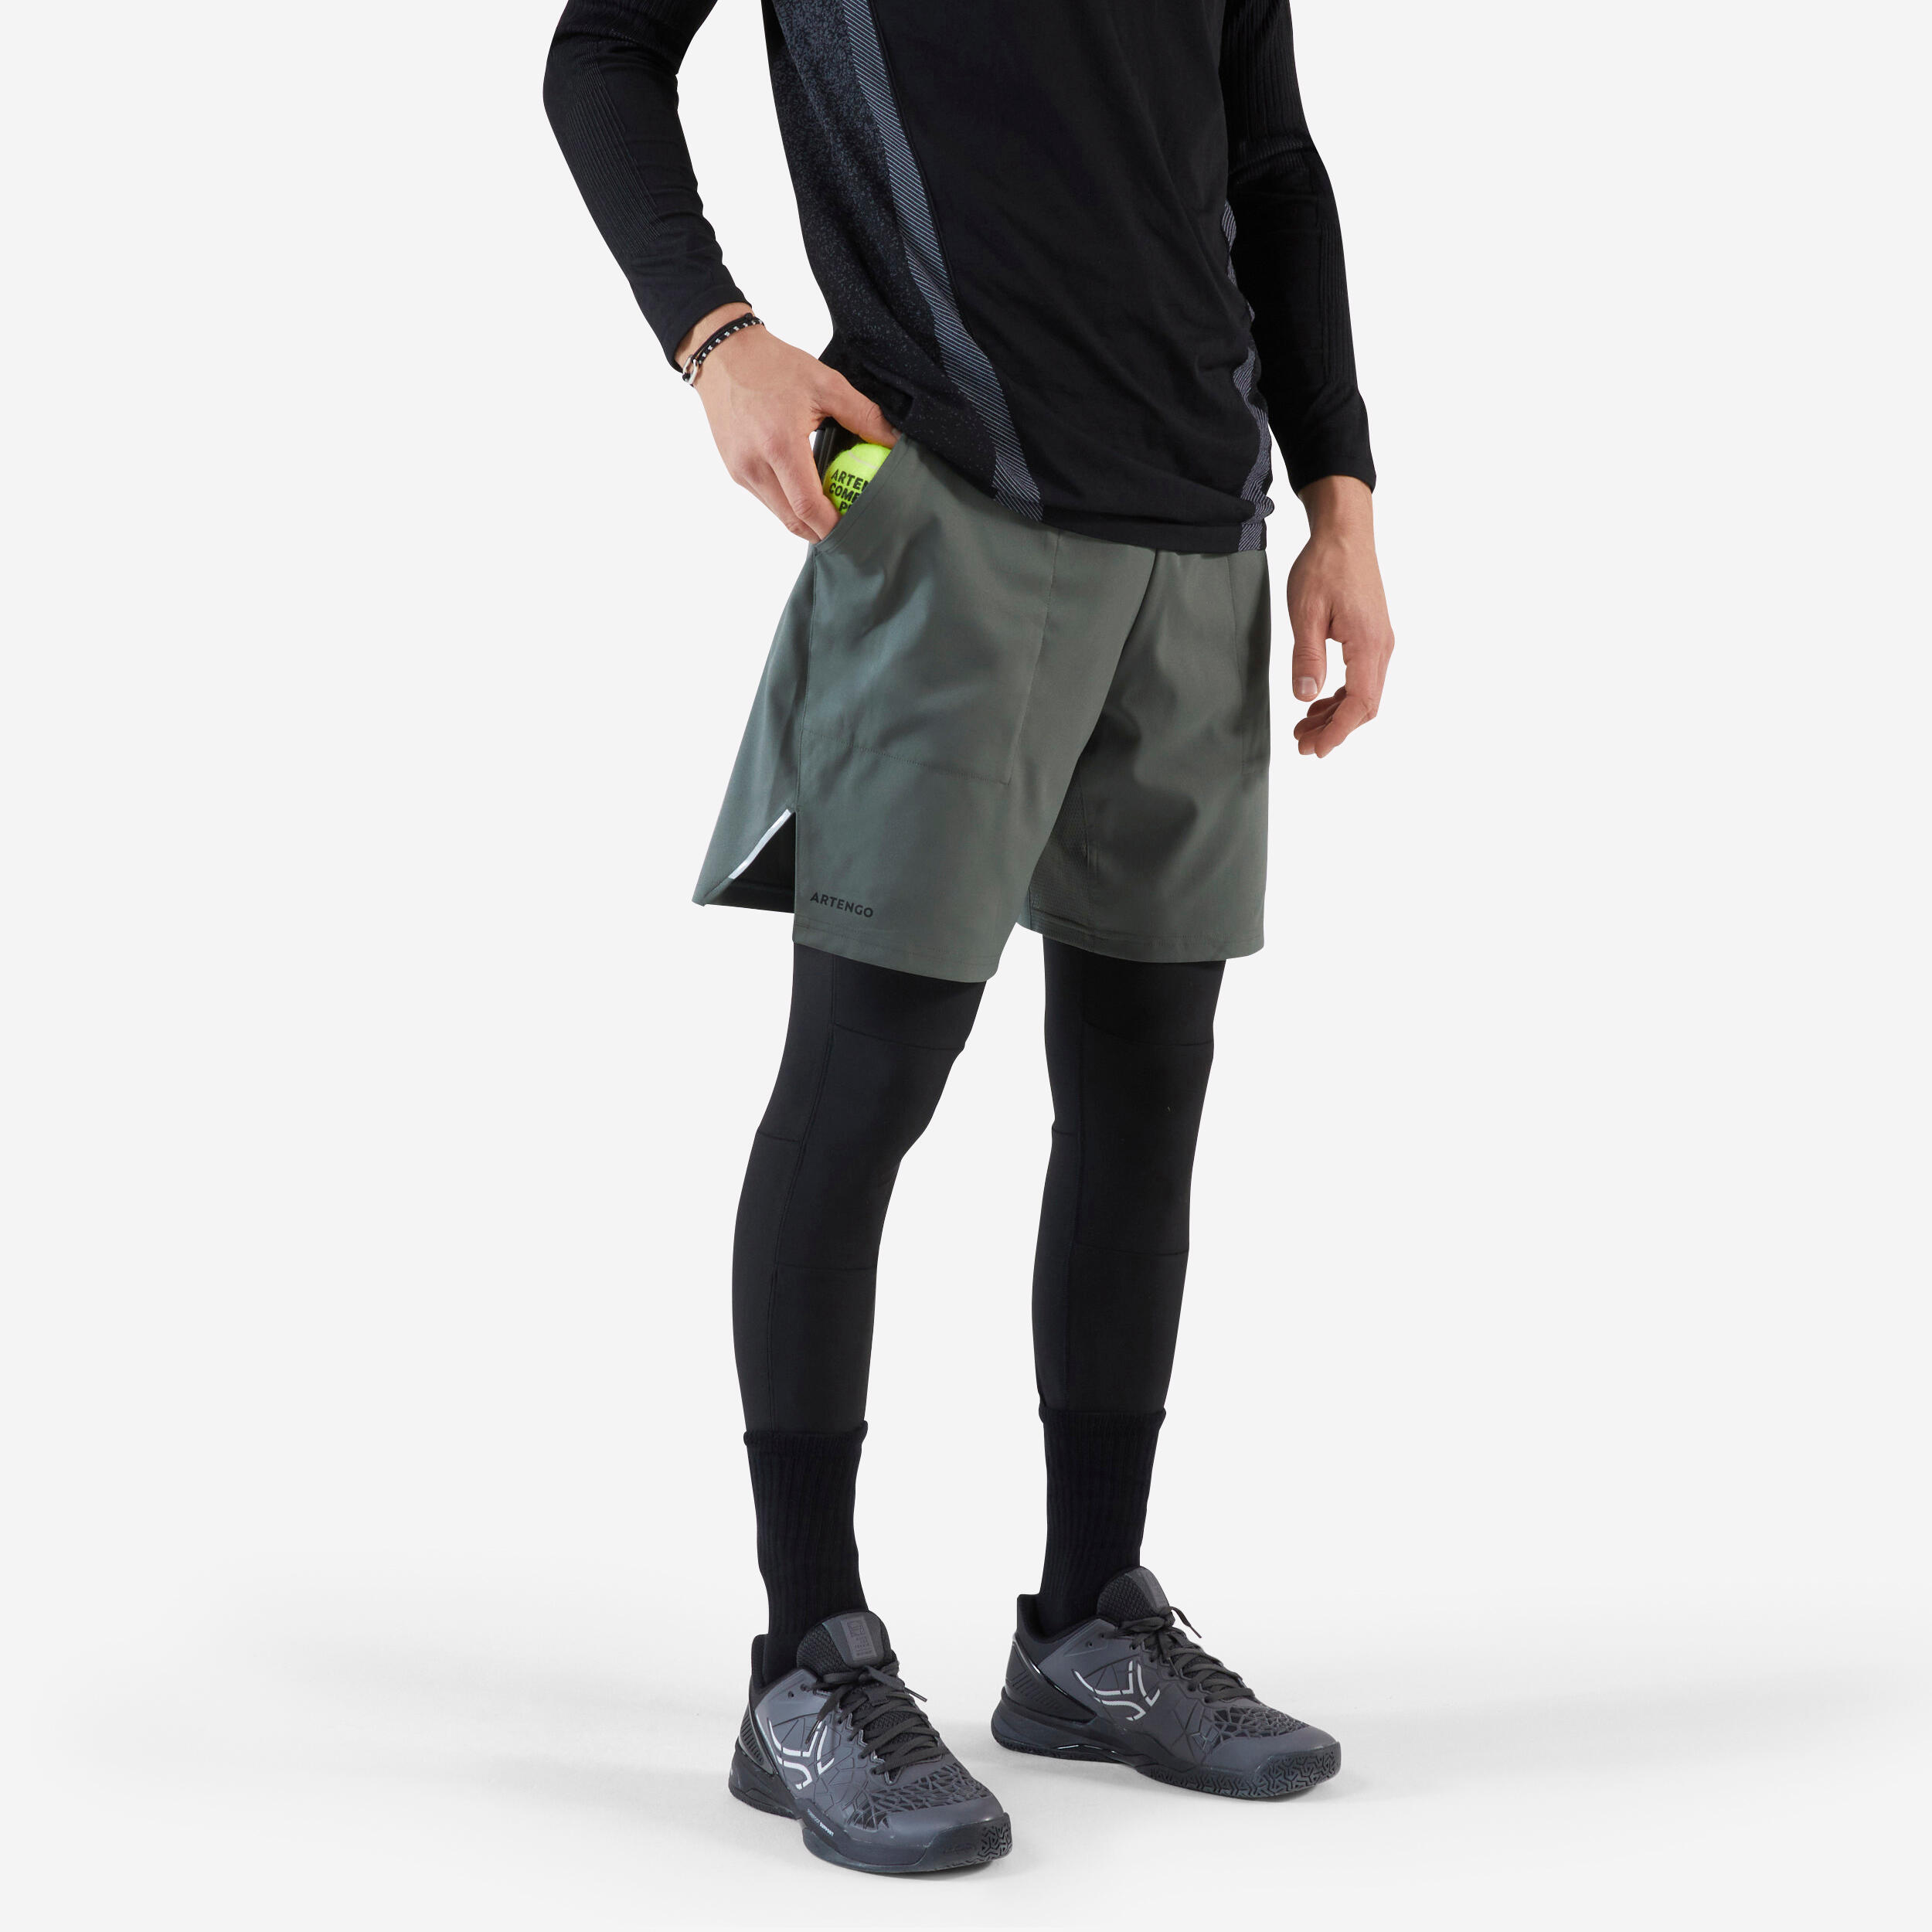 short legging 2 en 1 - artengo thermic gris kaki / noir - artengo